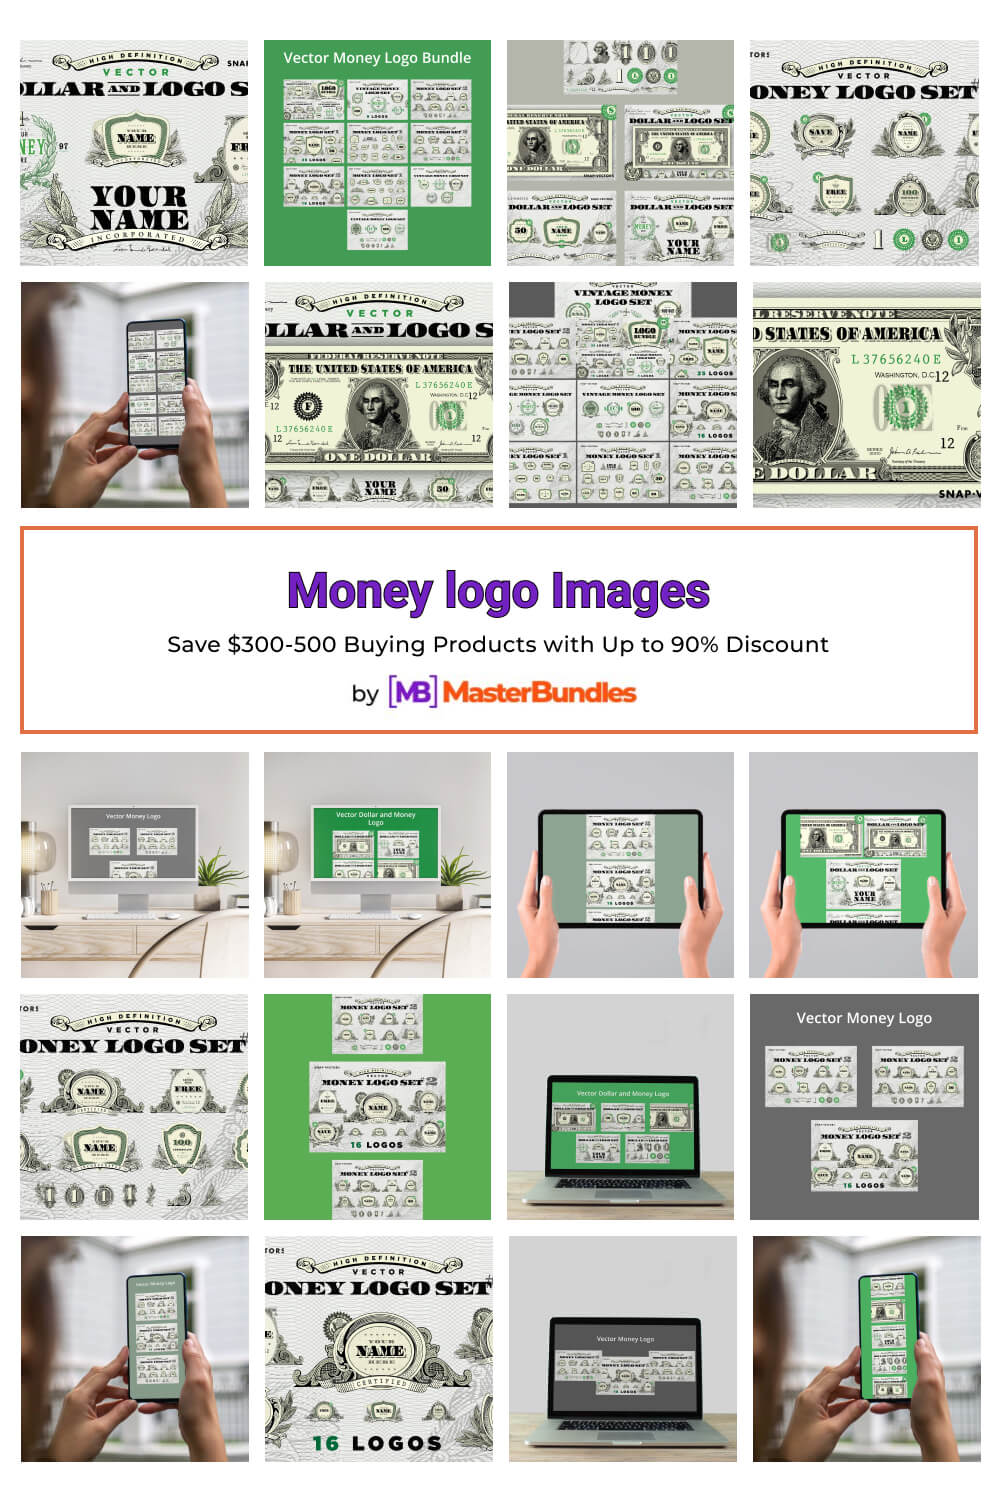 money logo images pinterest image.